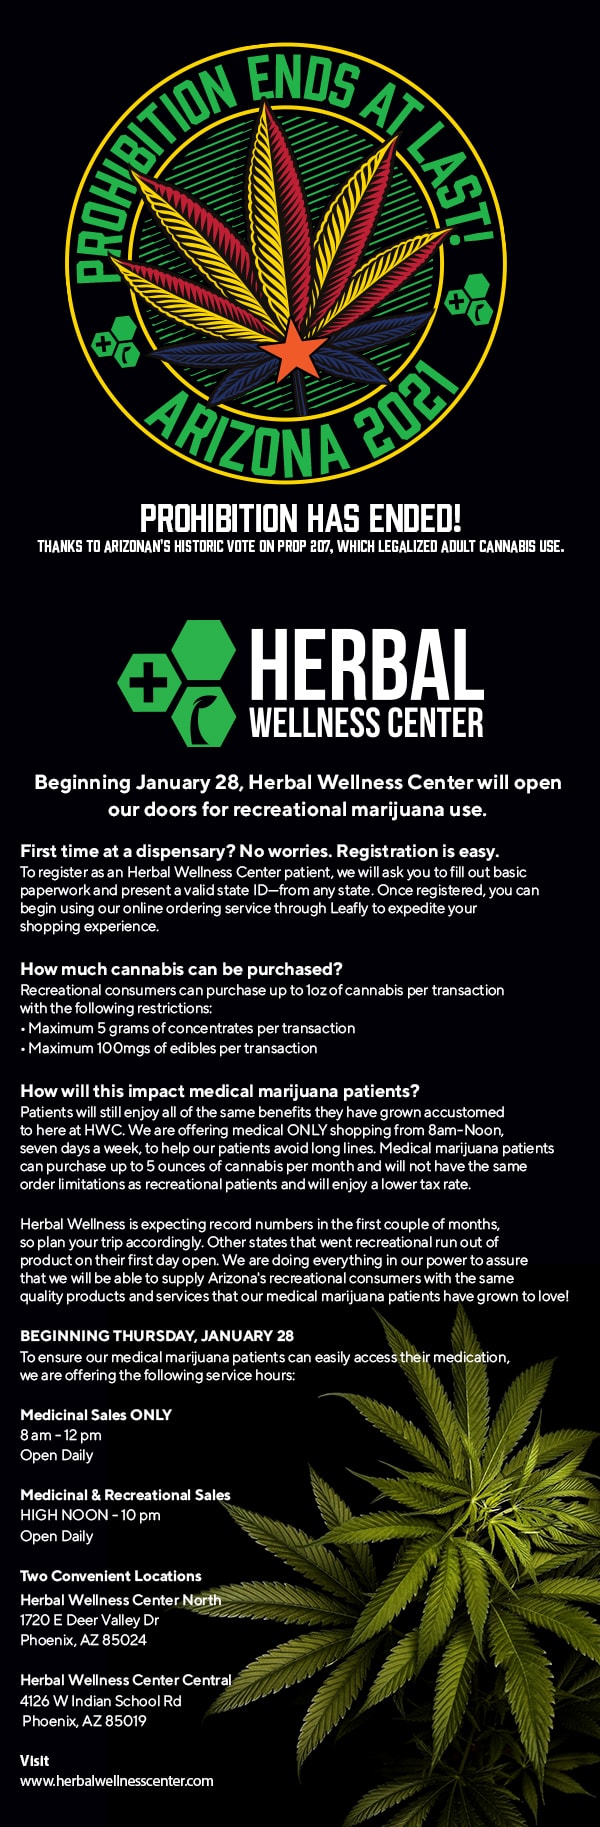 Herbal Wellness Center Arizona